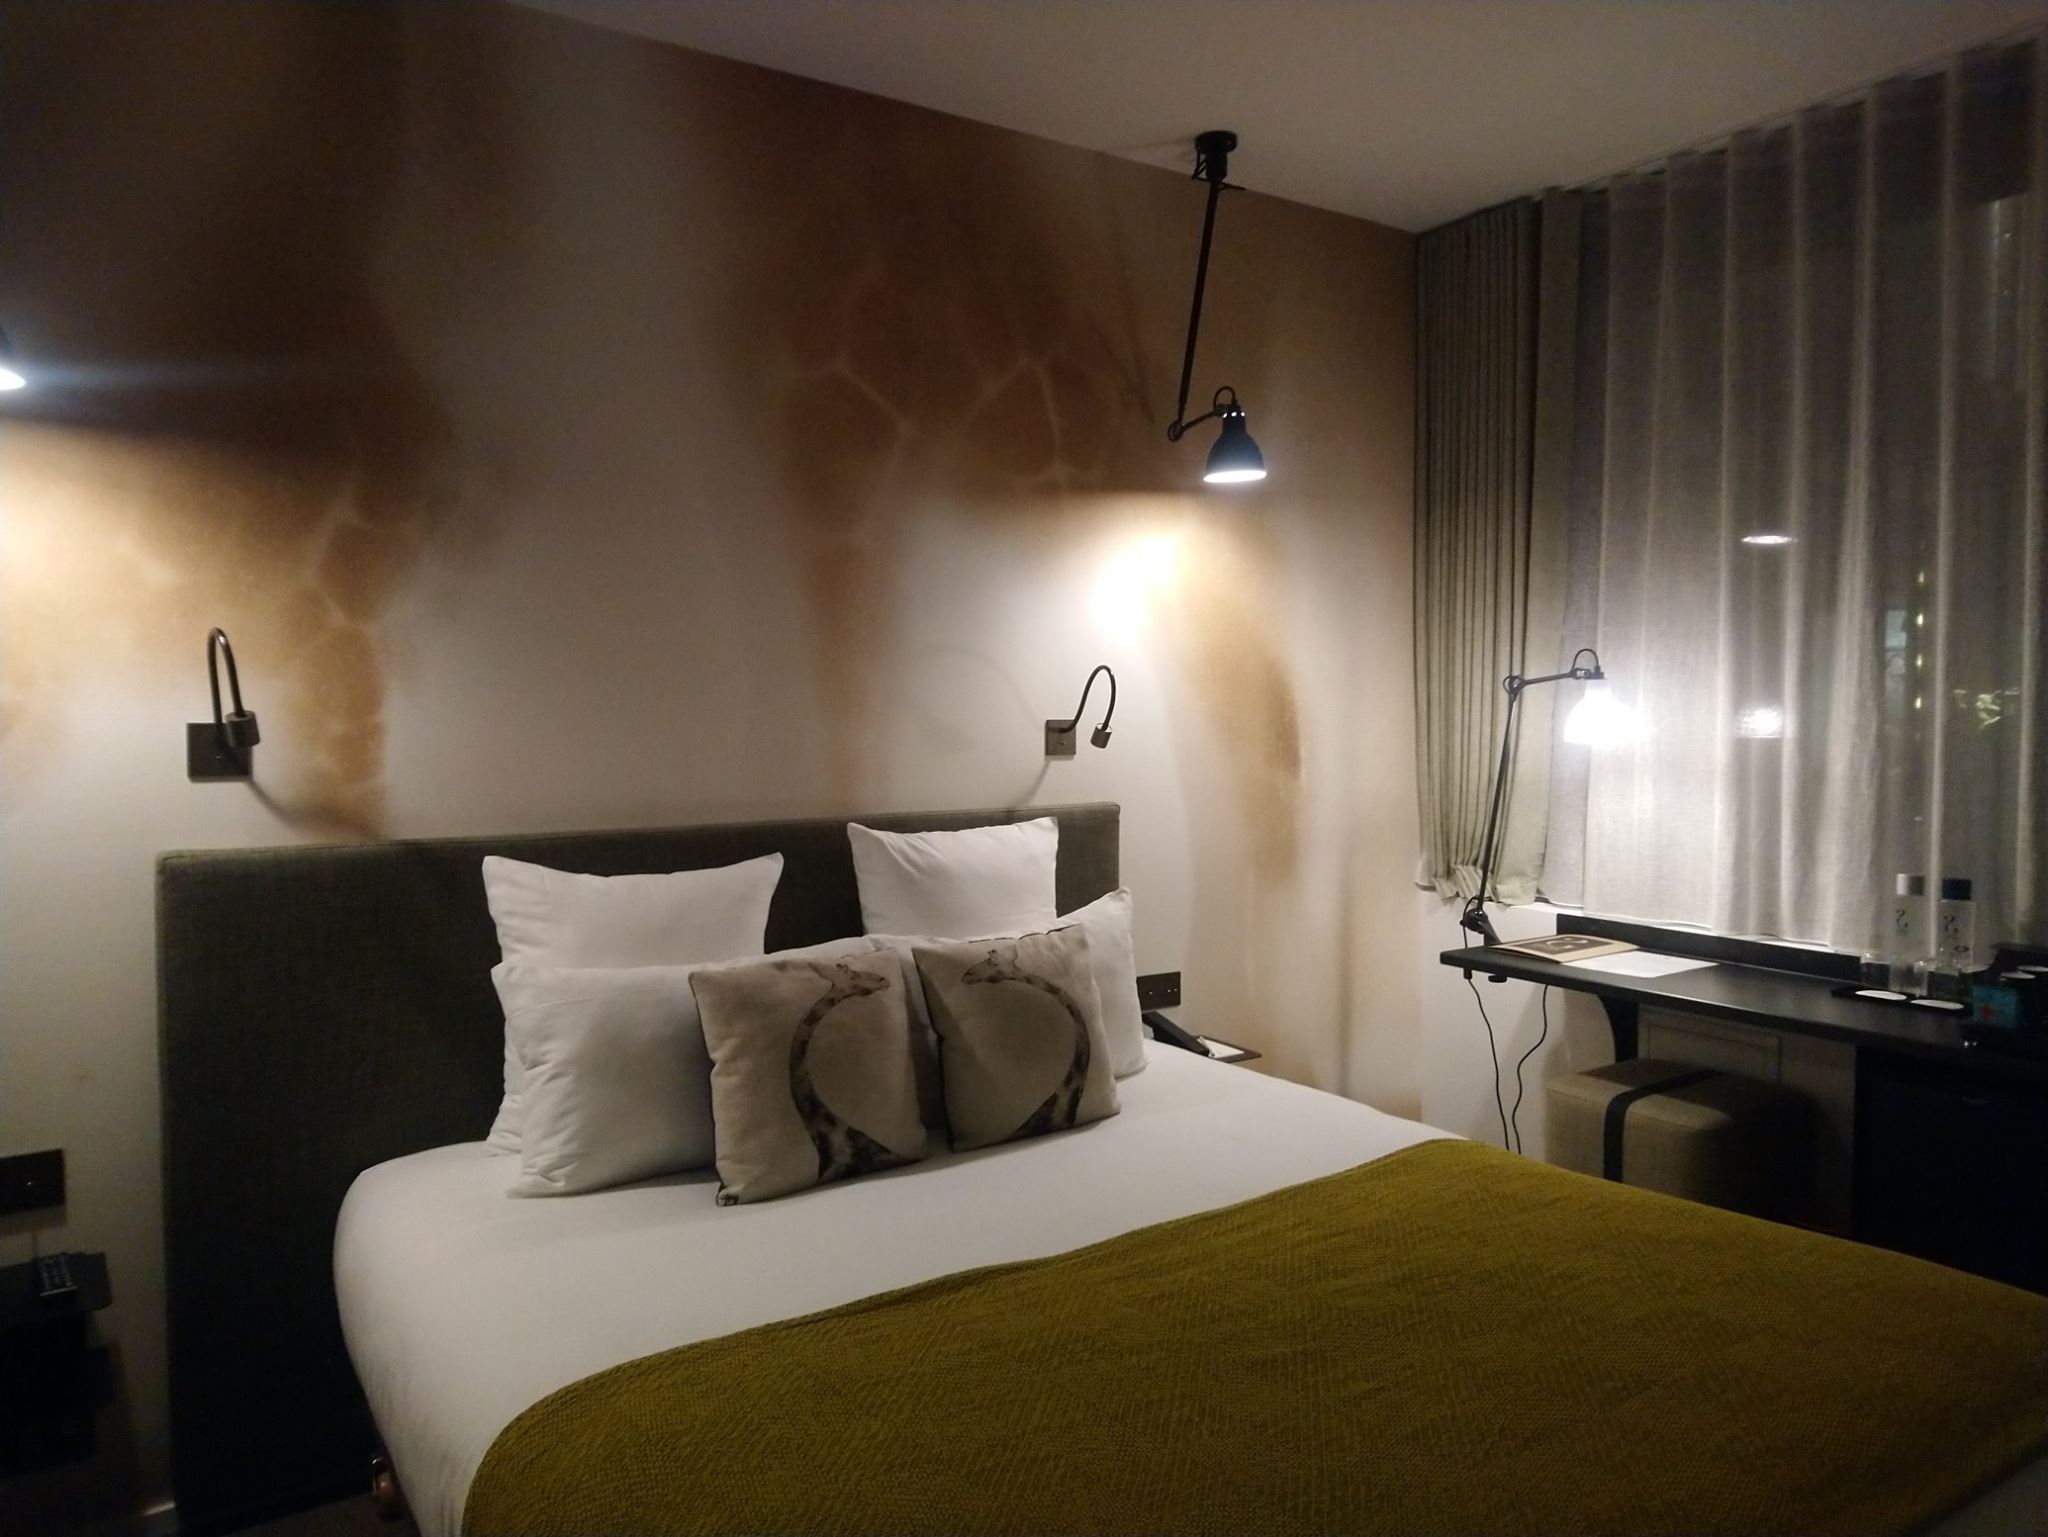 Chambre - Hôtel Les deux girafes - Paris 11e